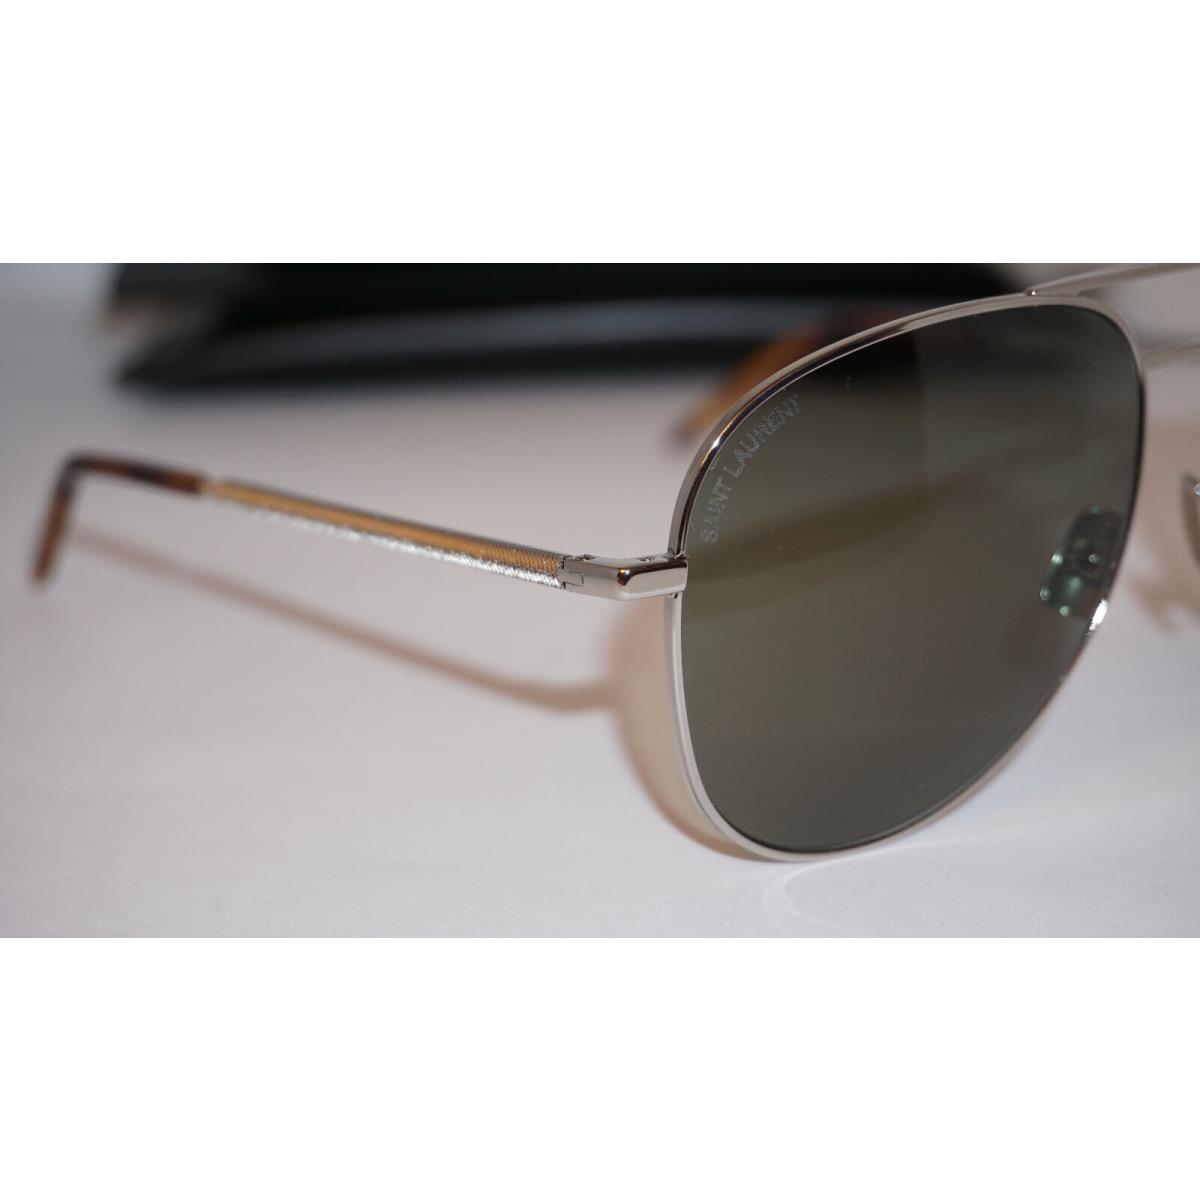 Yves Saint Laurent sunglasses  - Frame: Silver, Lens: Green 2